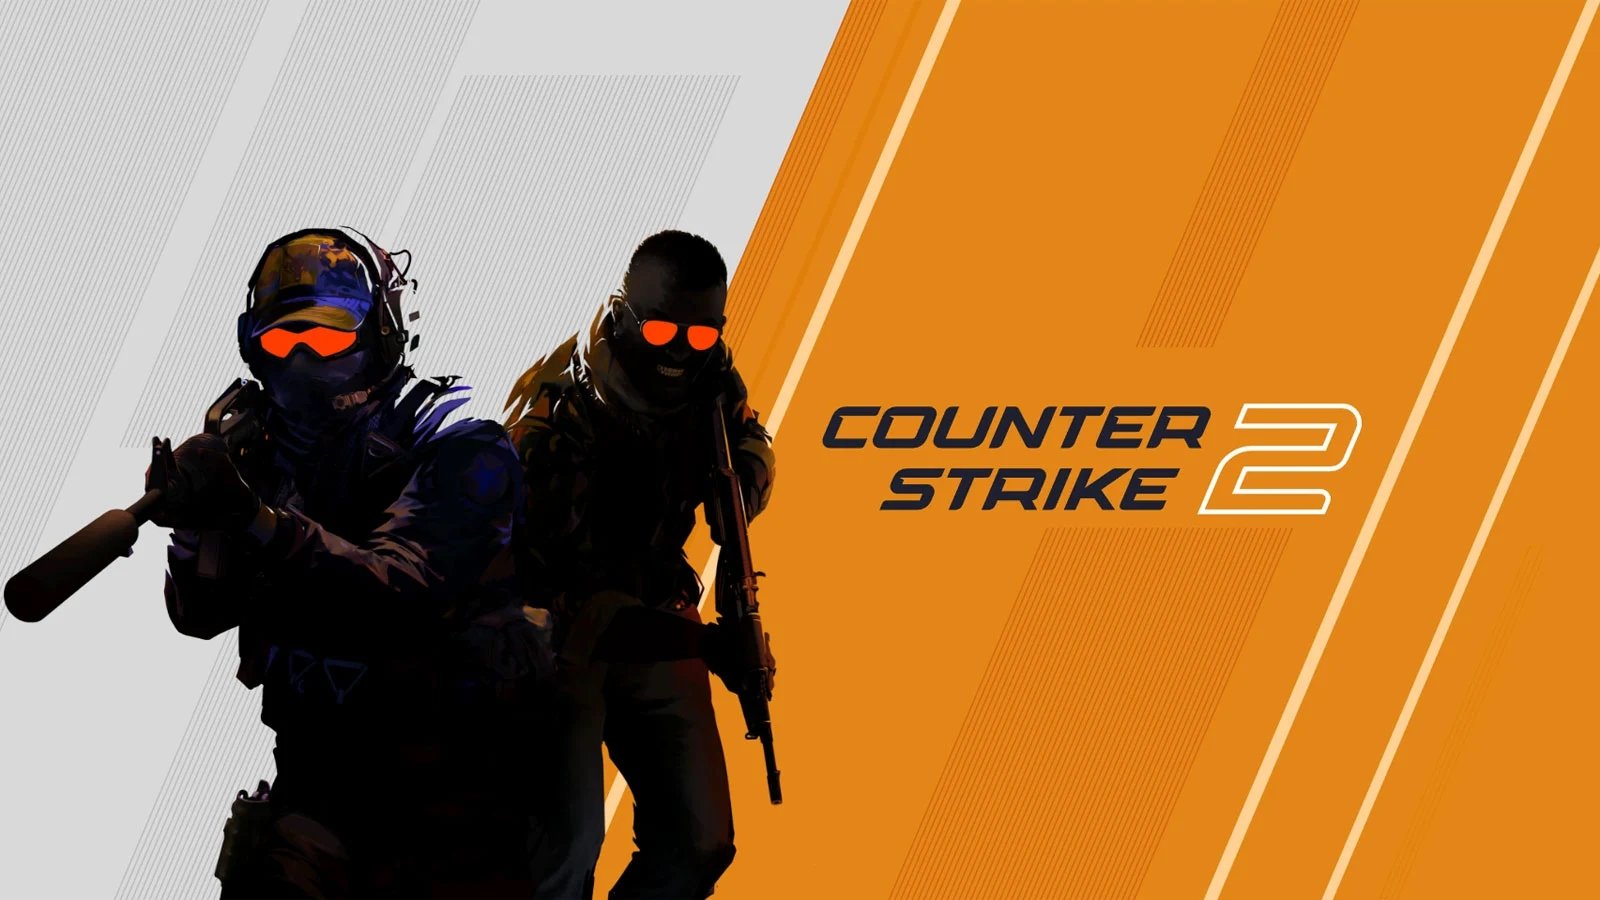 Valve corrige falha em Counter-Strike 2 que podia expor IP dos jogadores